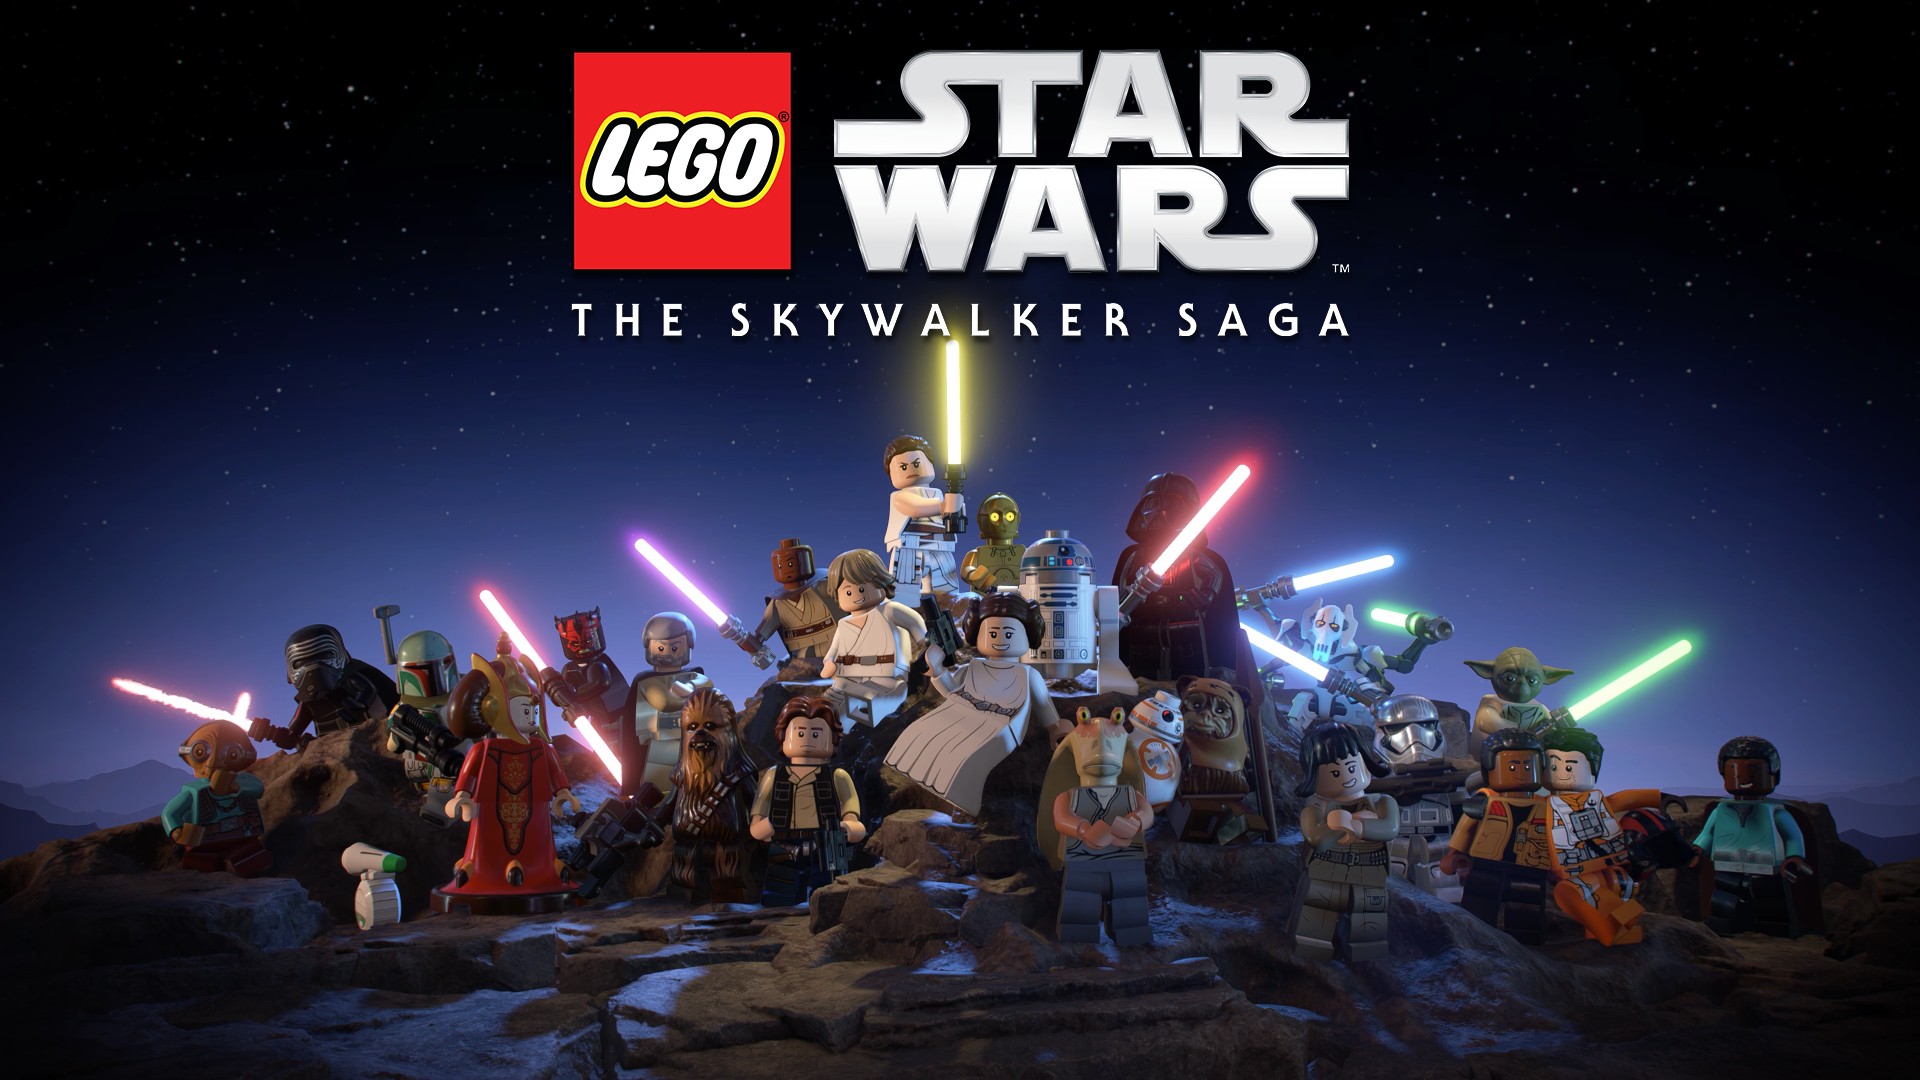 LEGO Star Wars: The Skywalker Saga revela la fecha de lanzamiento - Creo Gaming